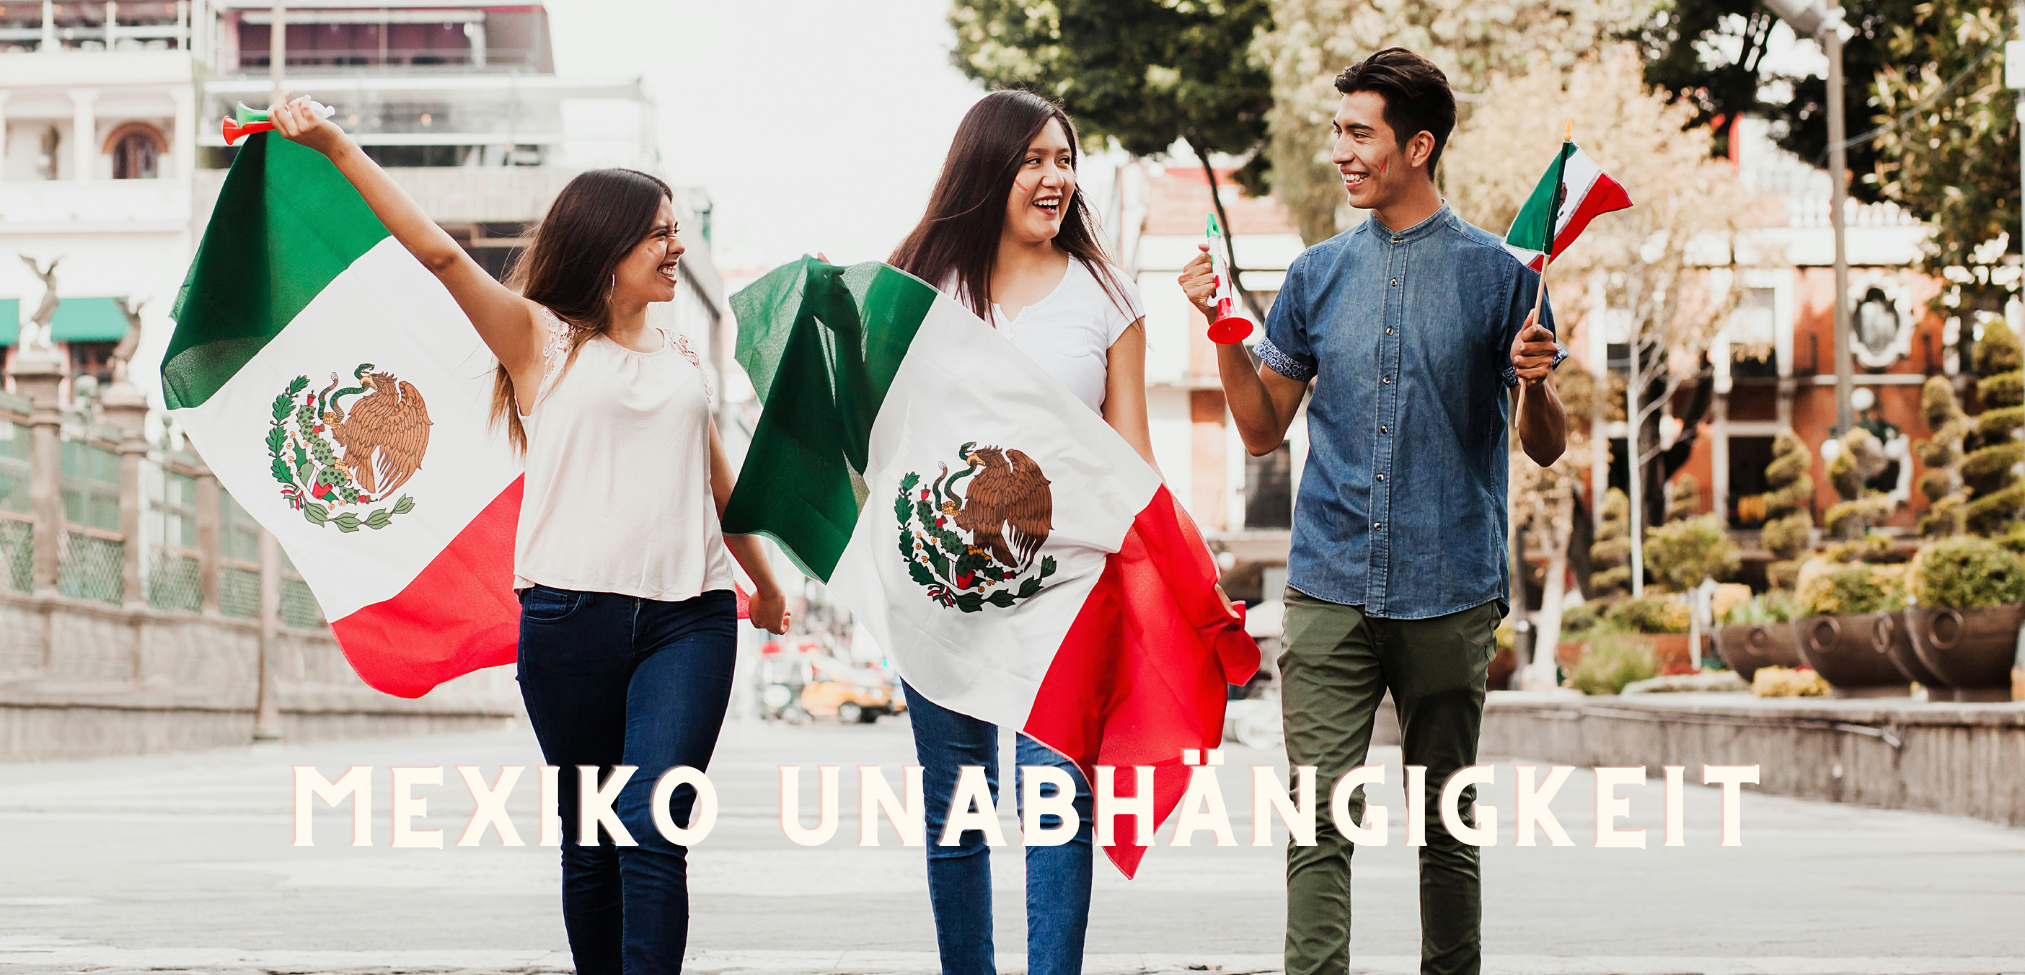 Aktivitäten in Mexiko: Tag der Unabhängigkeit